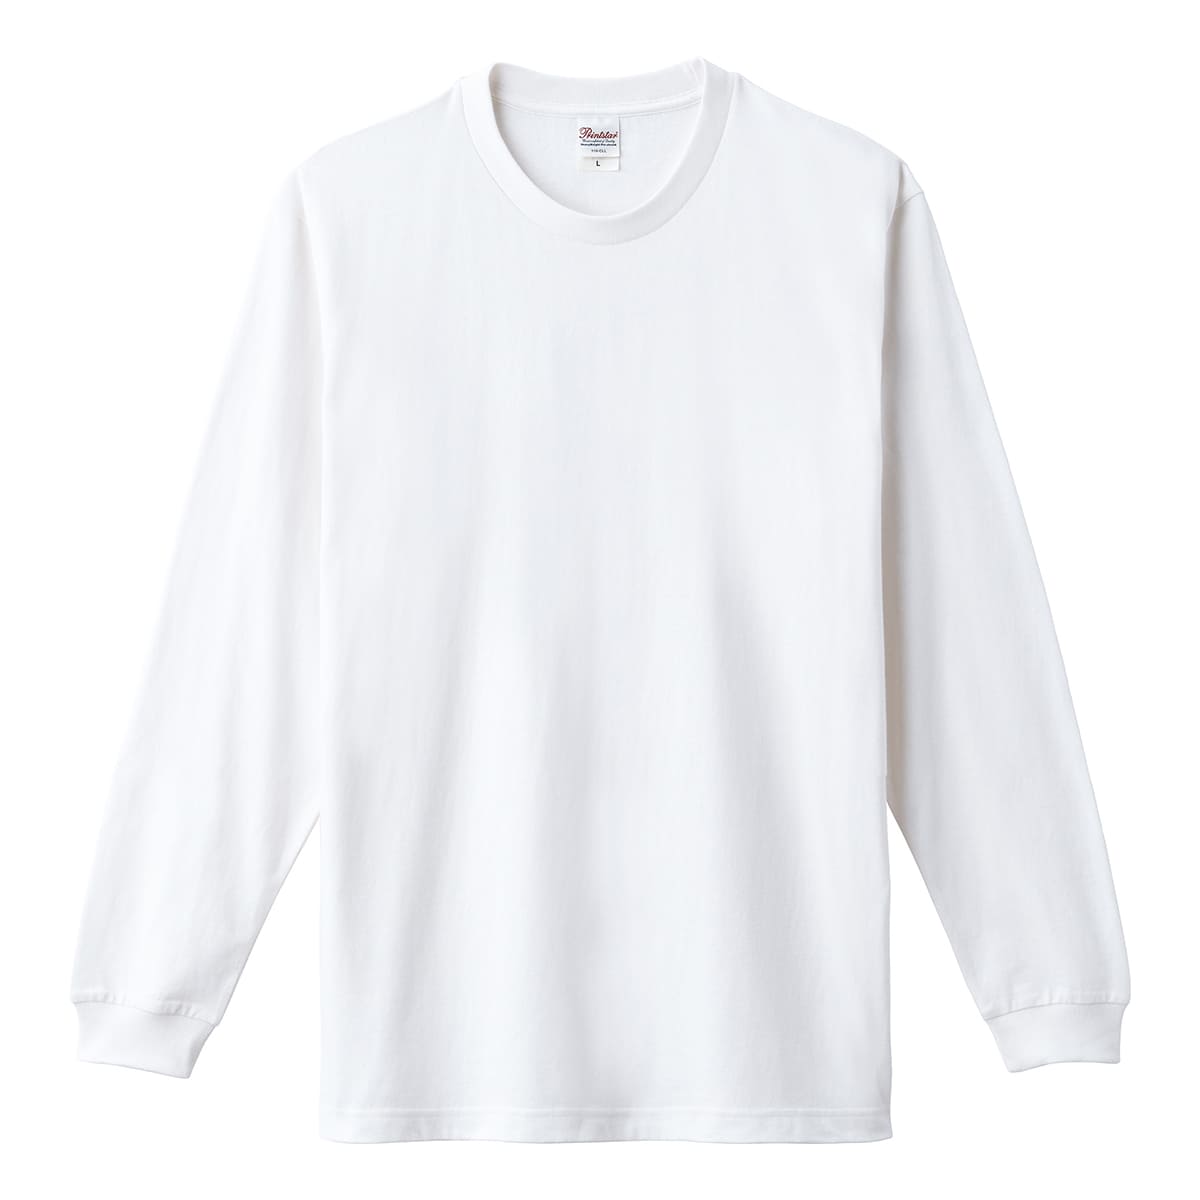 日本最大の ロンT メンズ 長袖 2XL ロンティー 5.6オンス 無地 ヘビーウェイトLS-Tシャツ( 大きいサイズ リブ) 00110-cll  Printstar プリントスター 3XL リブ イベント トップス